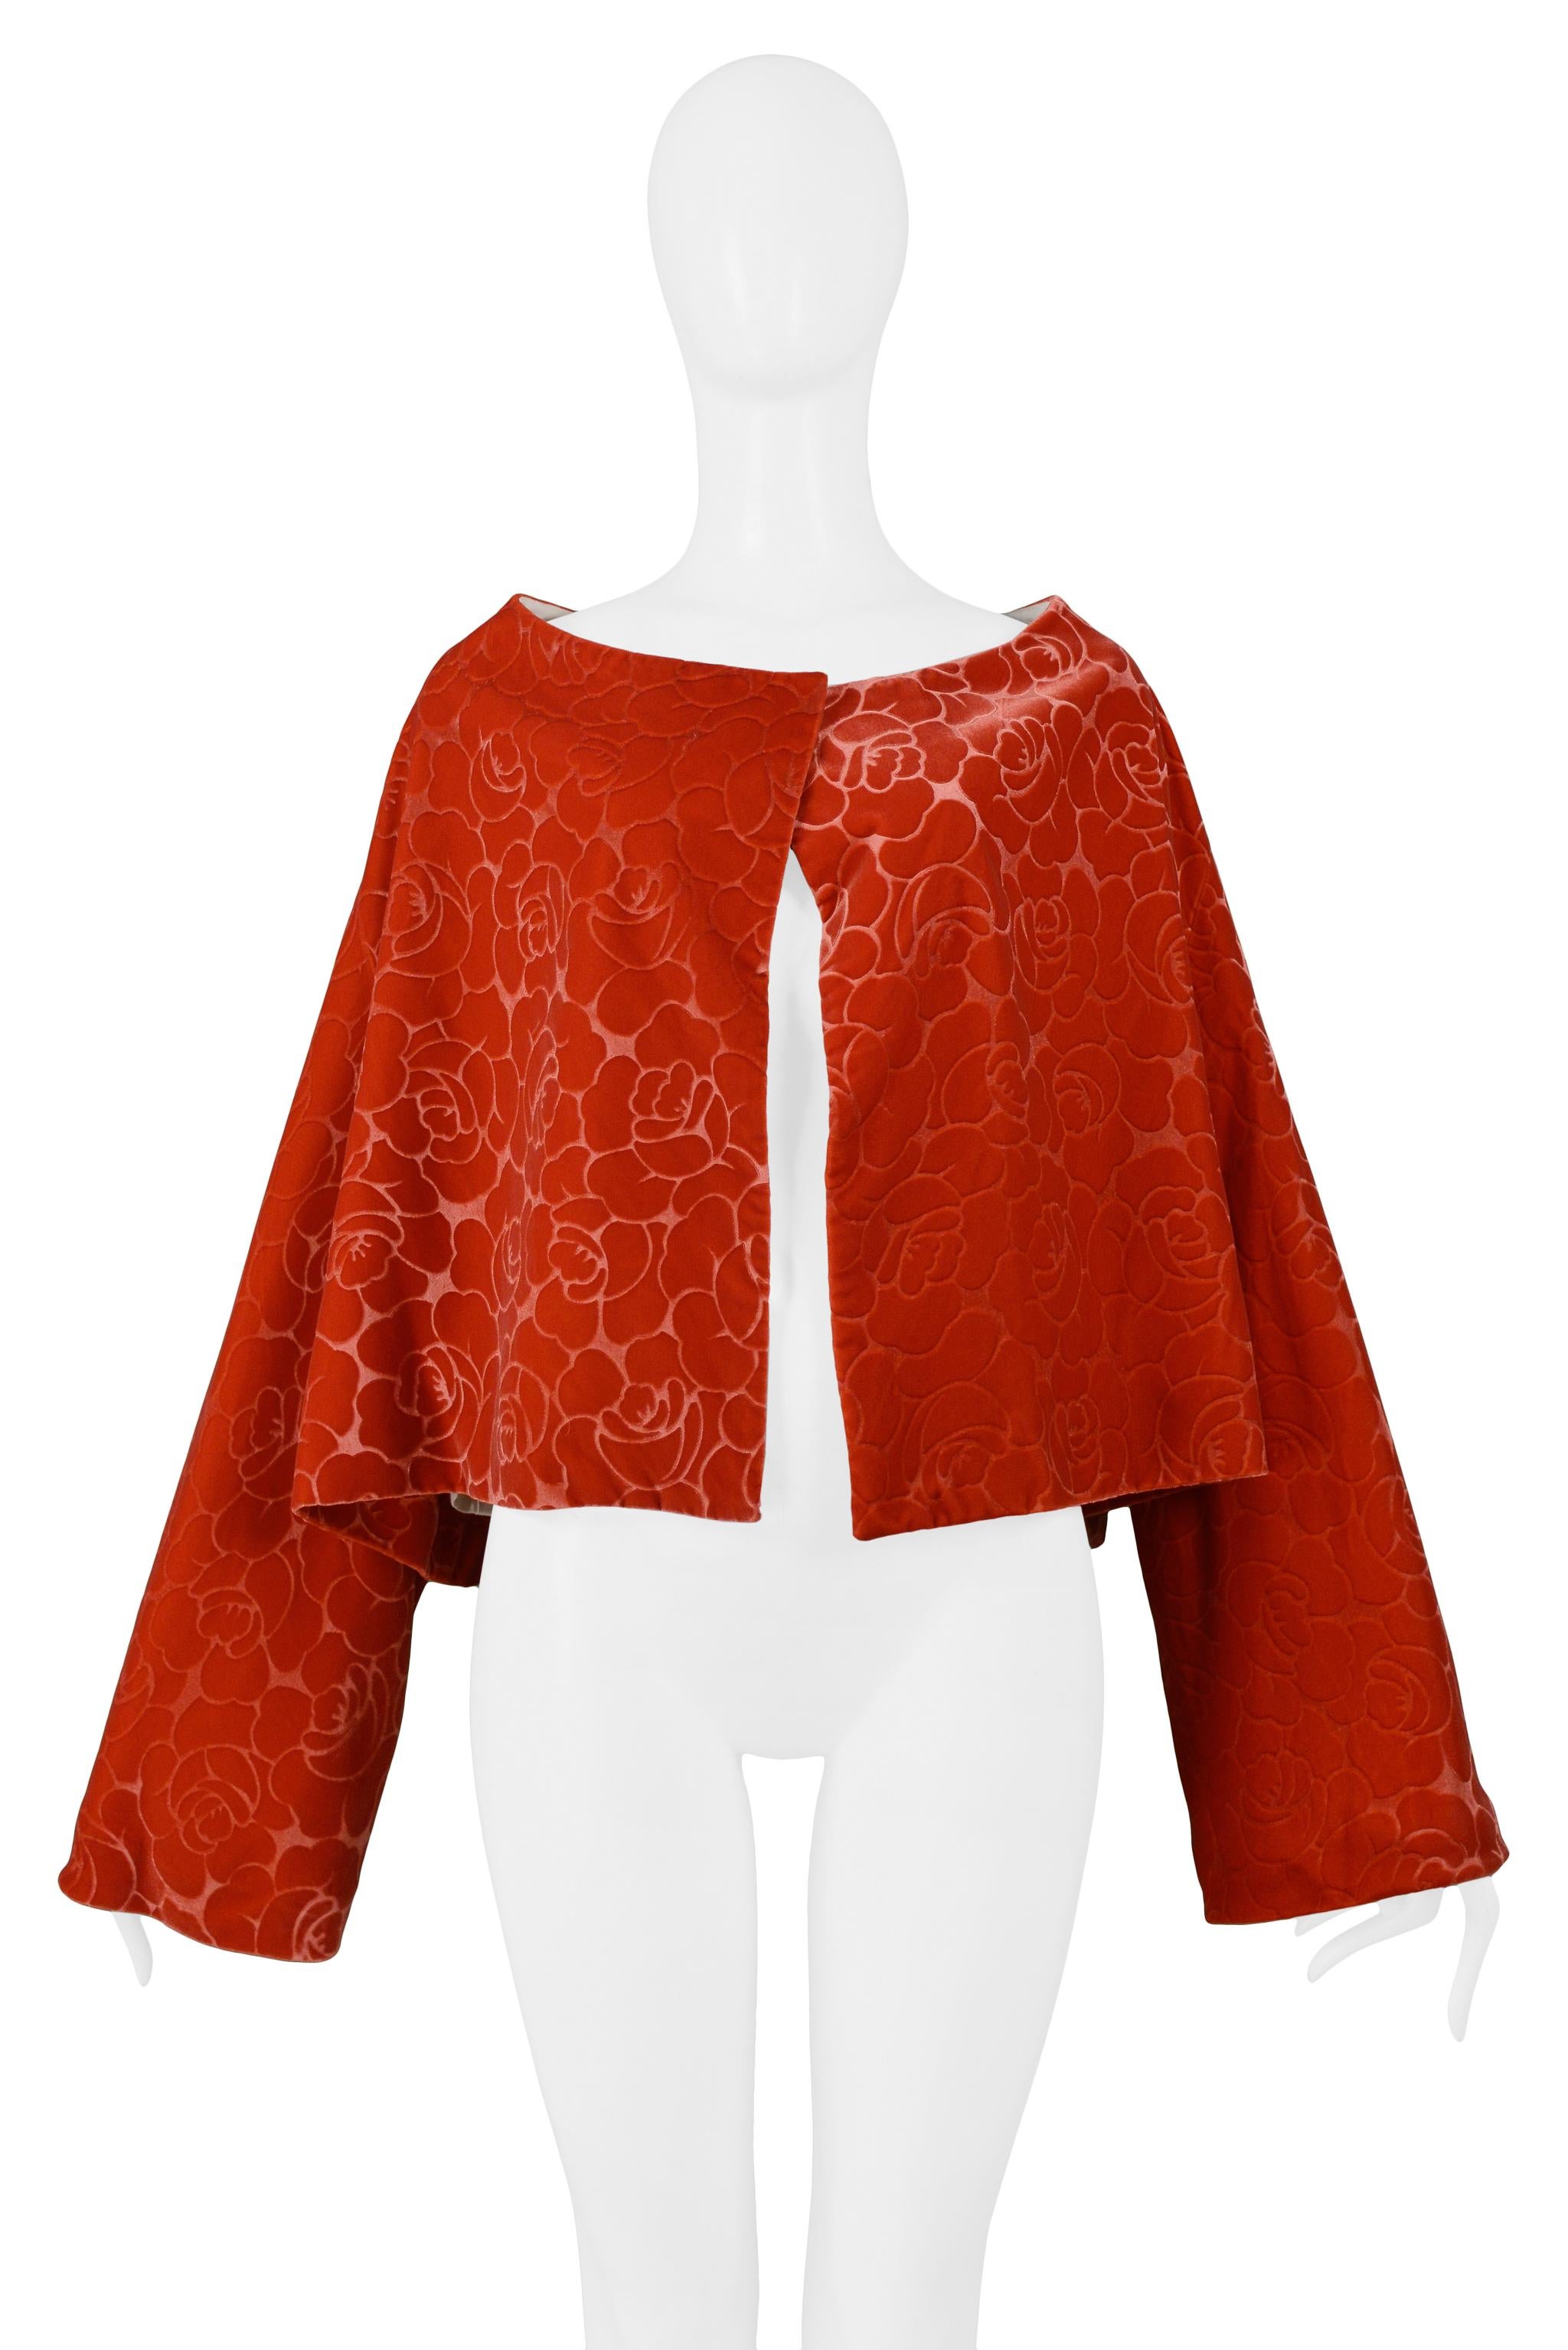 Women's Comme Des Garcons Orange Red Floral Velvet Jacket 1996